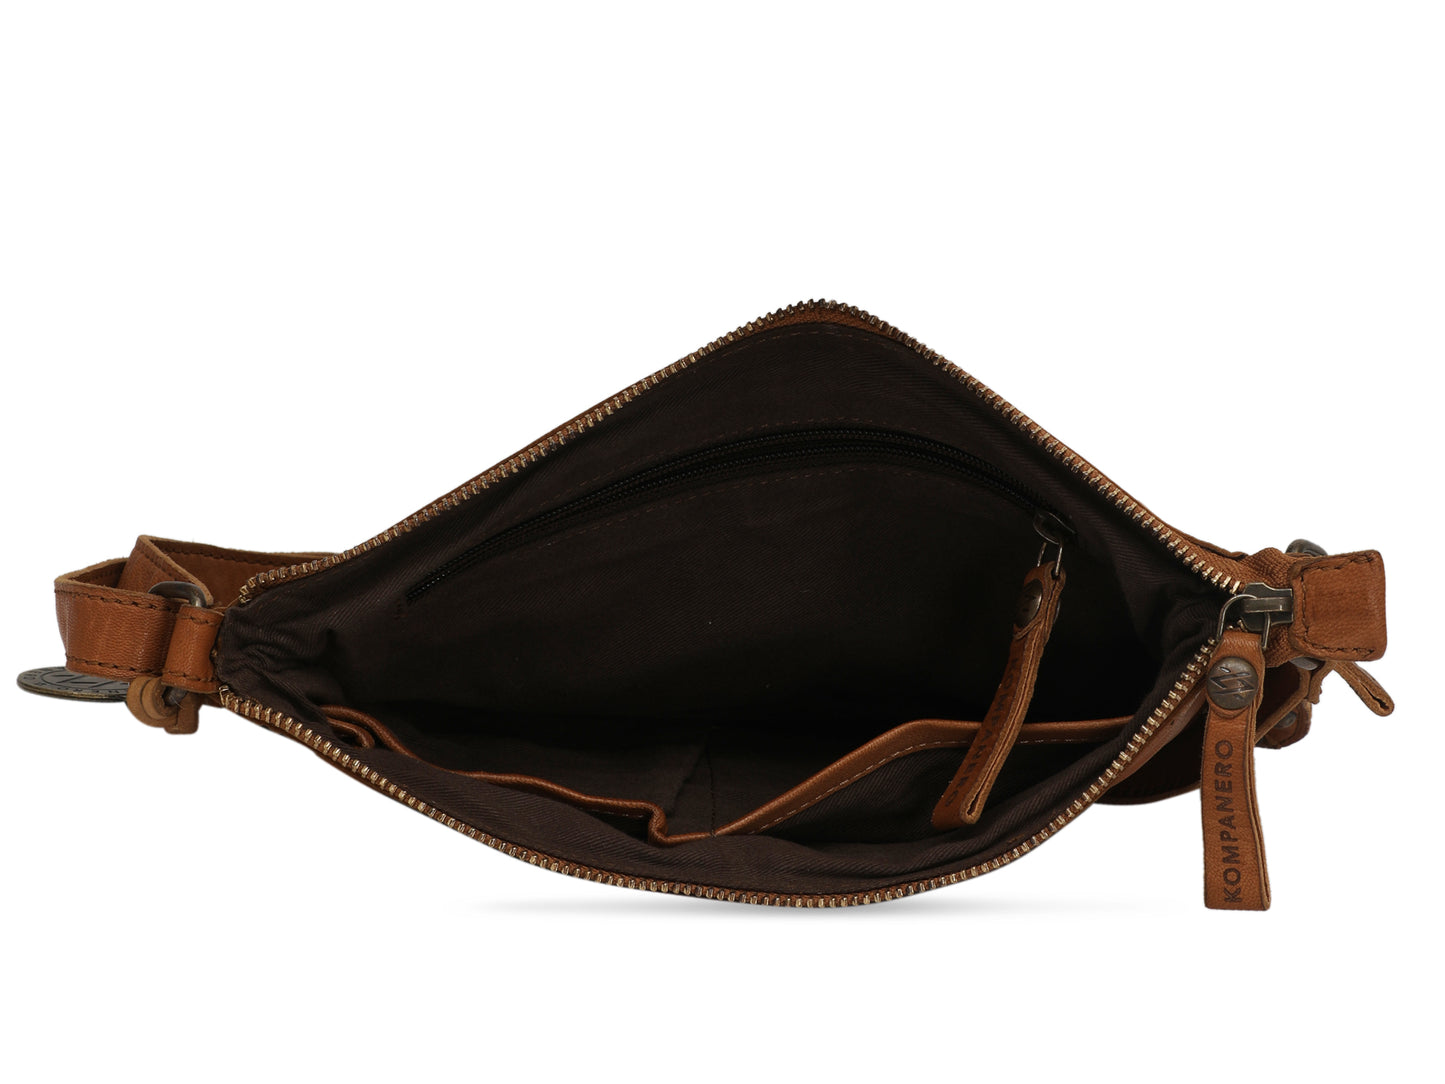 Hawysia - The Sling Bag